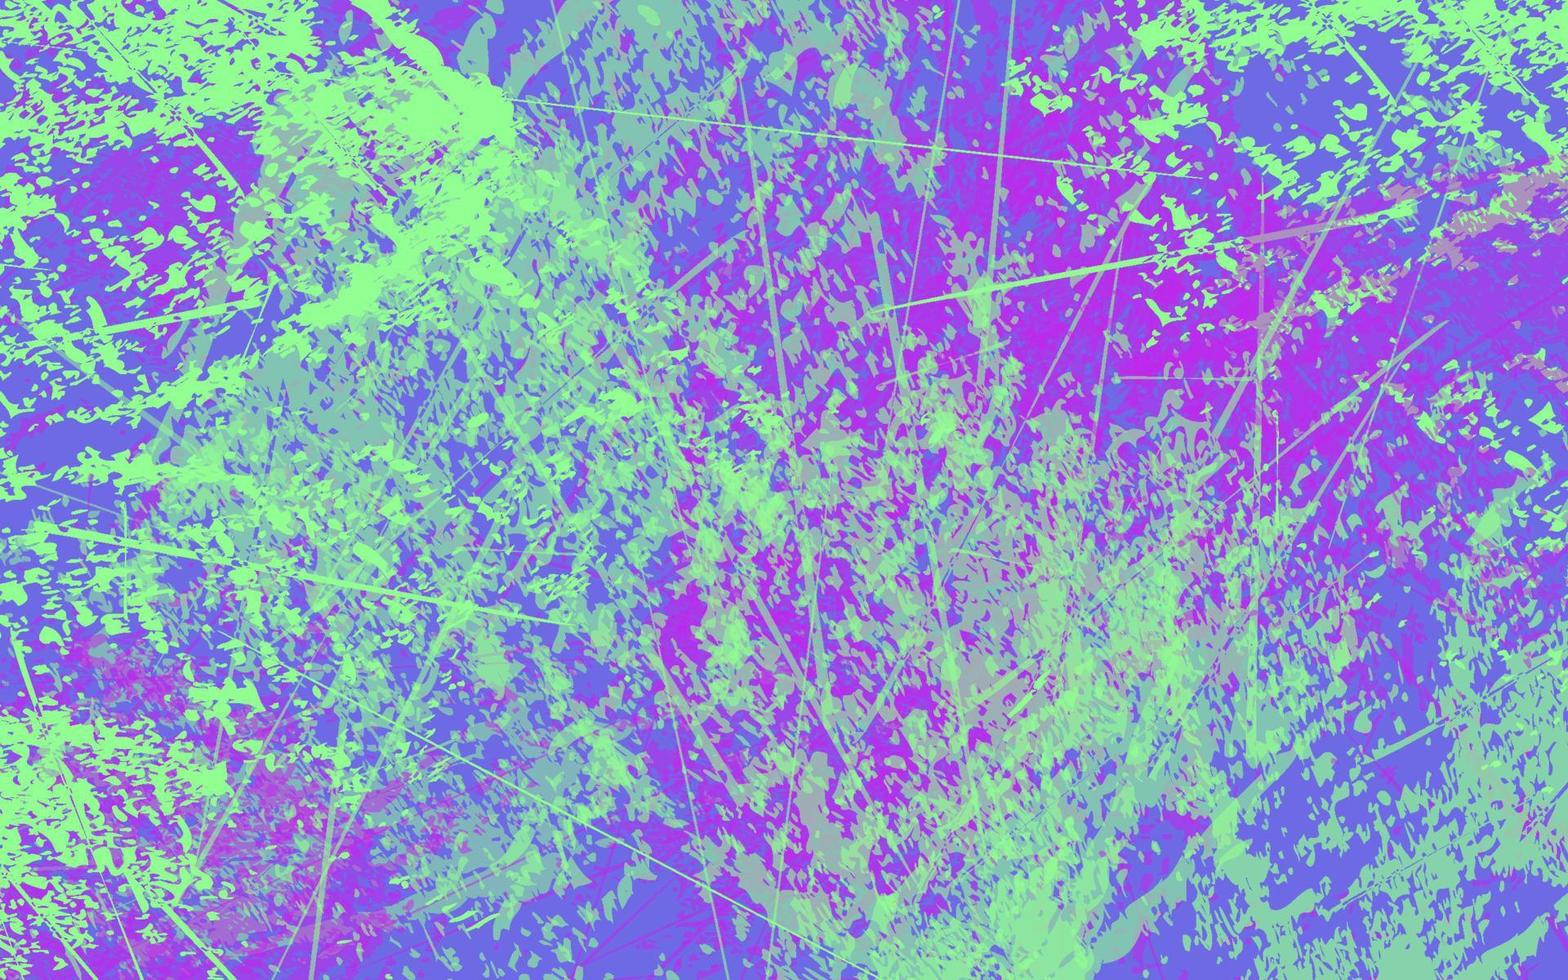 abstrakter Grunge-Textur-Spritzer-Farben-Multicolor-Hintergrund vektor